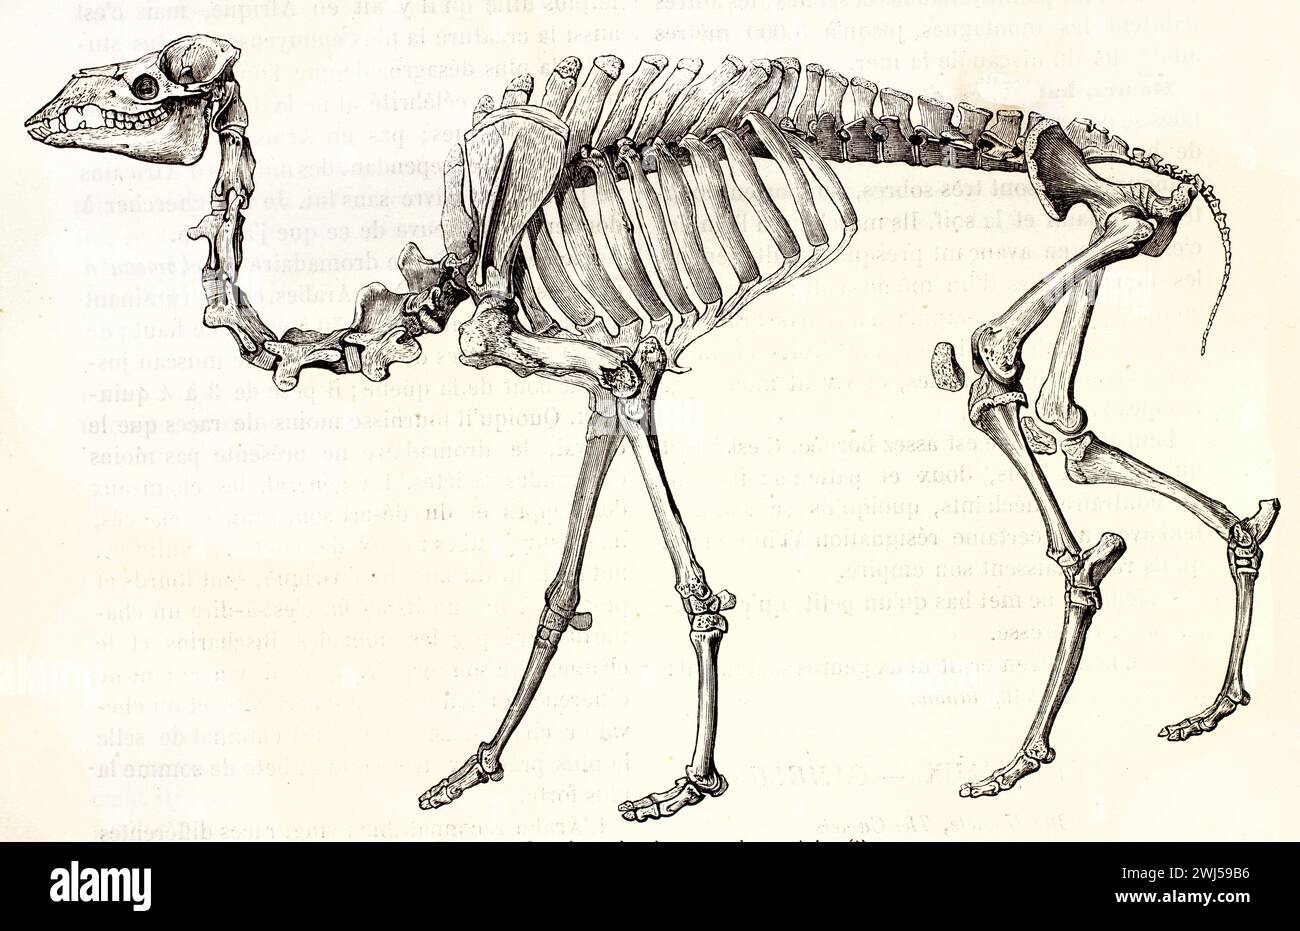 Structure squelettique à profil complet d'un dromadaire dans le style antique de gravure noir et blanc isolé sur fond blanc. Auteur inconnu, Paris 1878 Banque D'Images